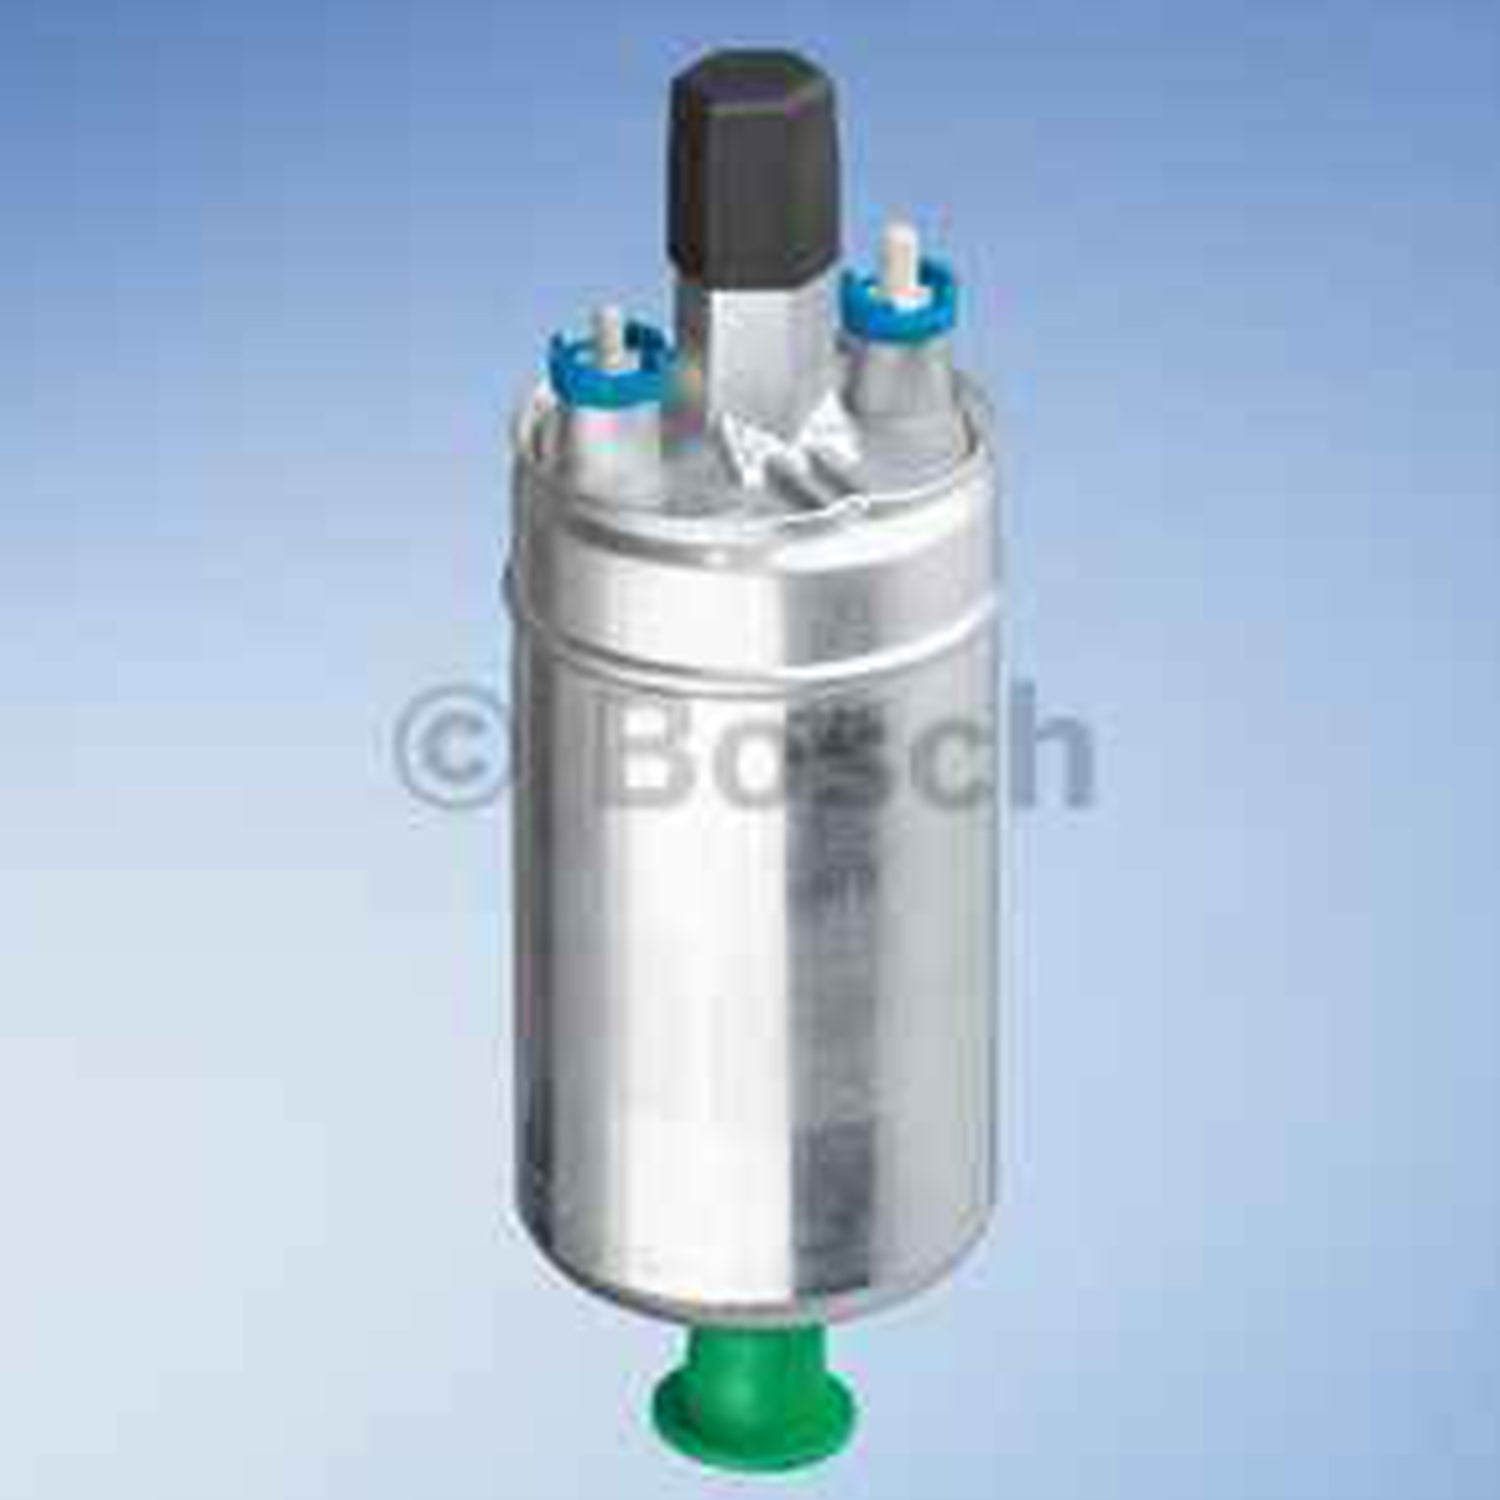 Bosch Fuel Pump inline EFI 550HP 165 Litres @ 5 Bar